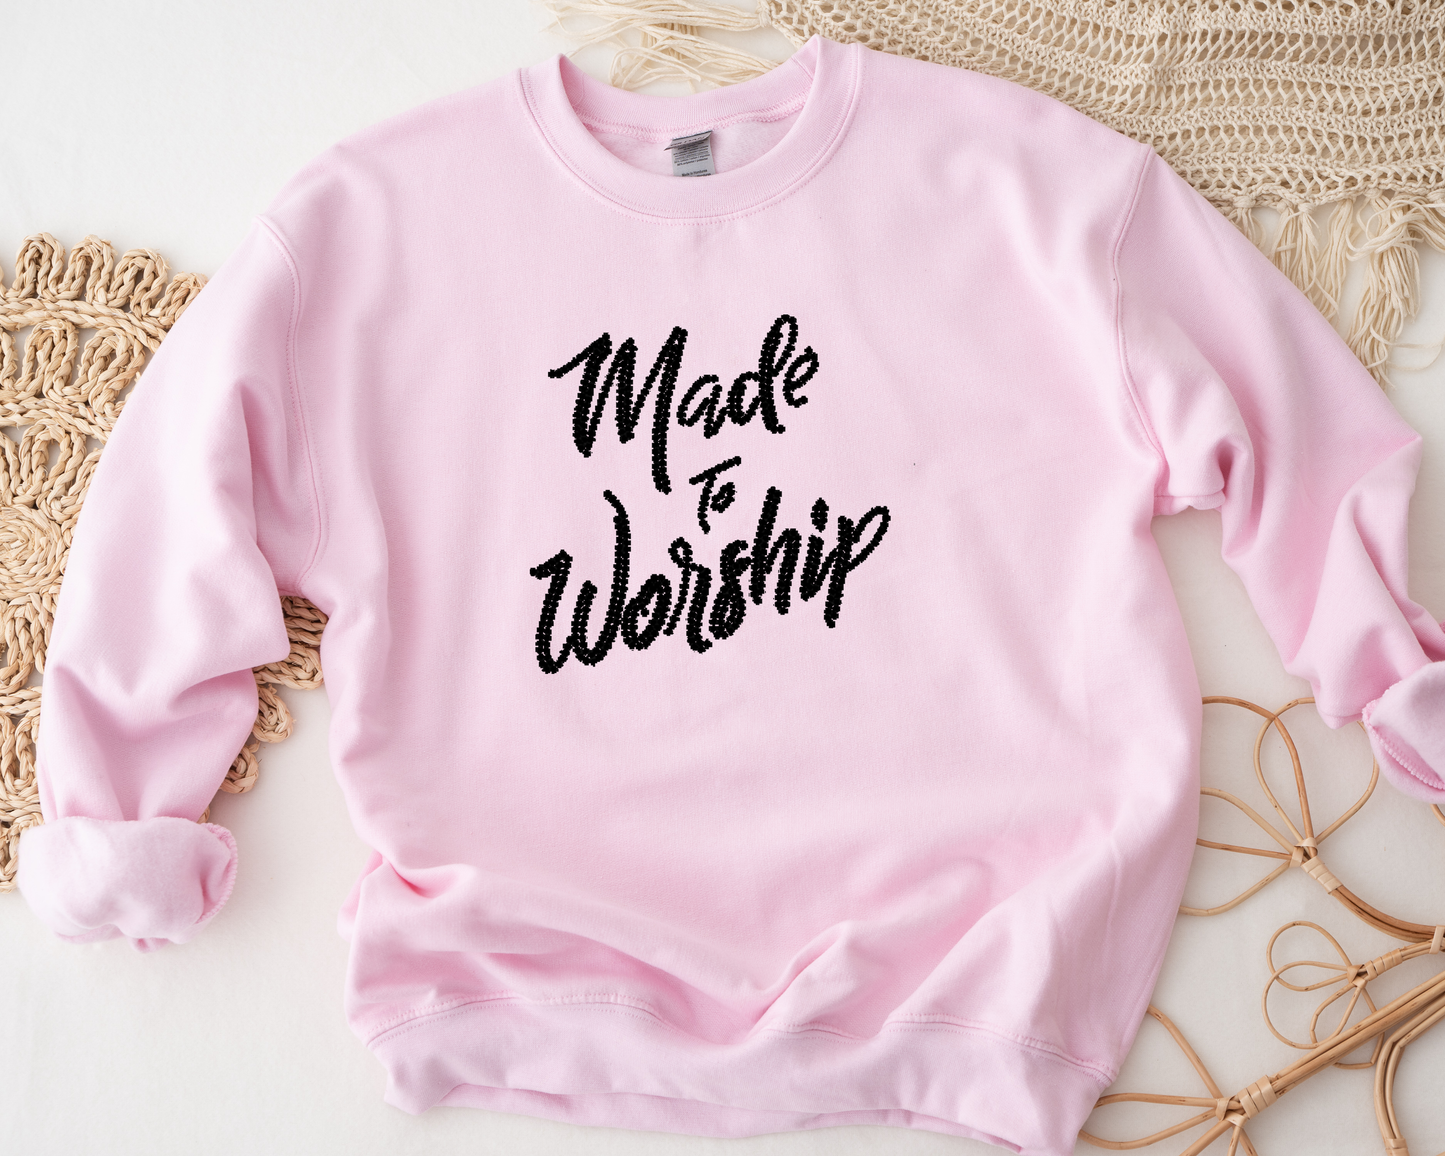 Made to Worship Rhinestone hoodies/sweatshirts